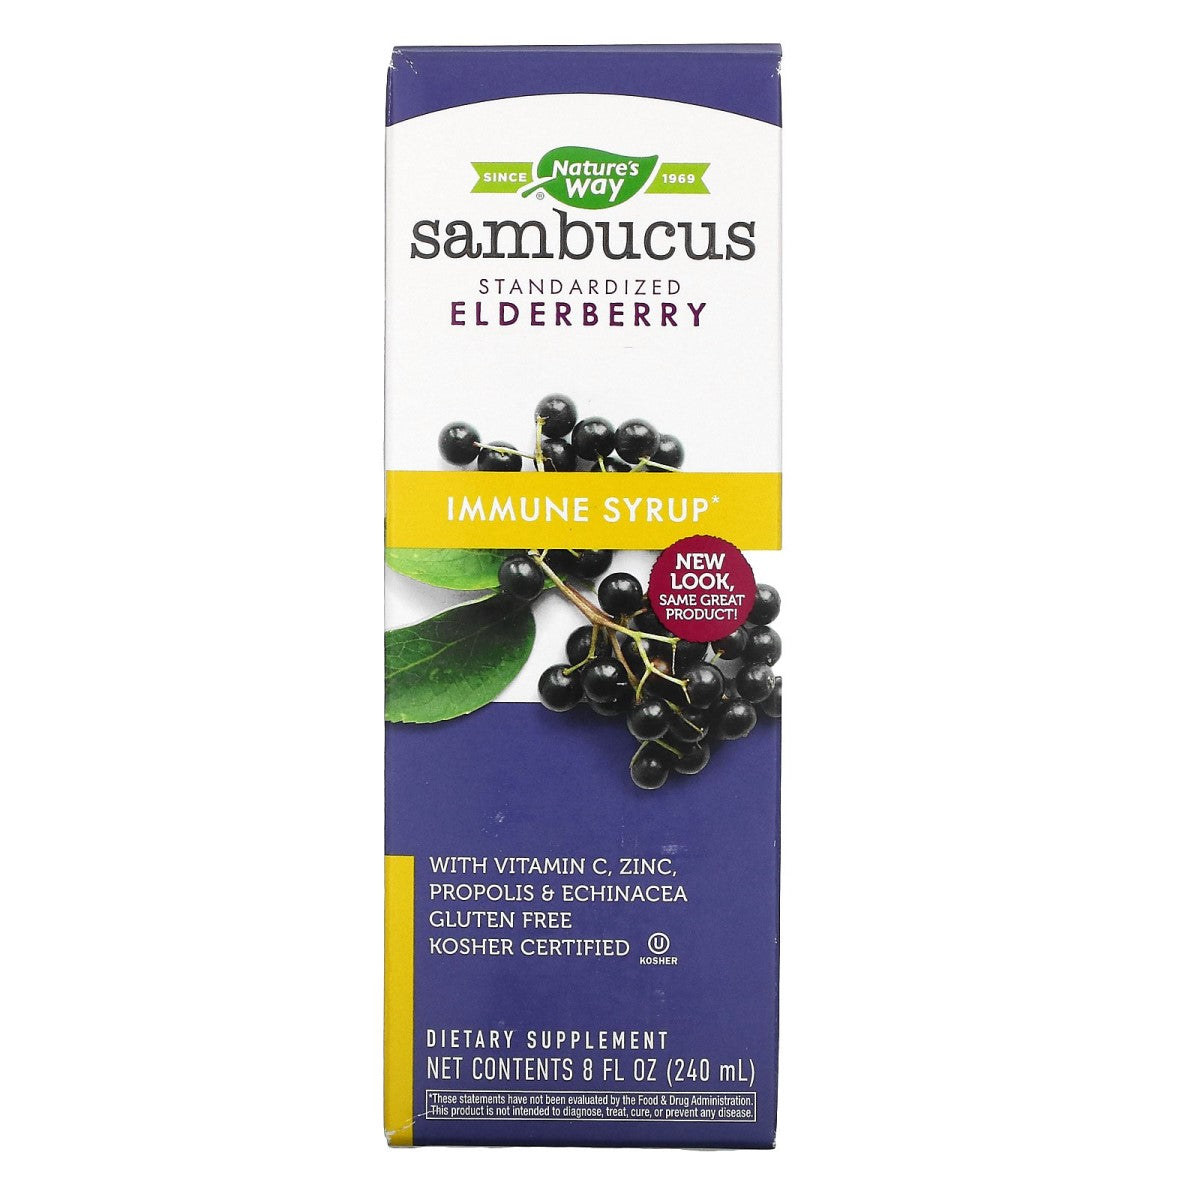 Primary image of Sambucus Immune Syrup